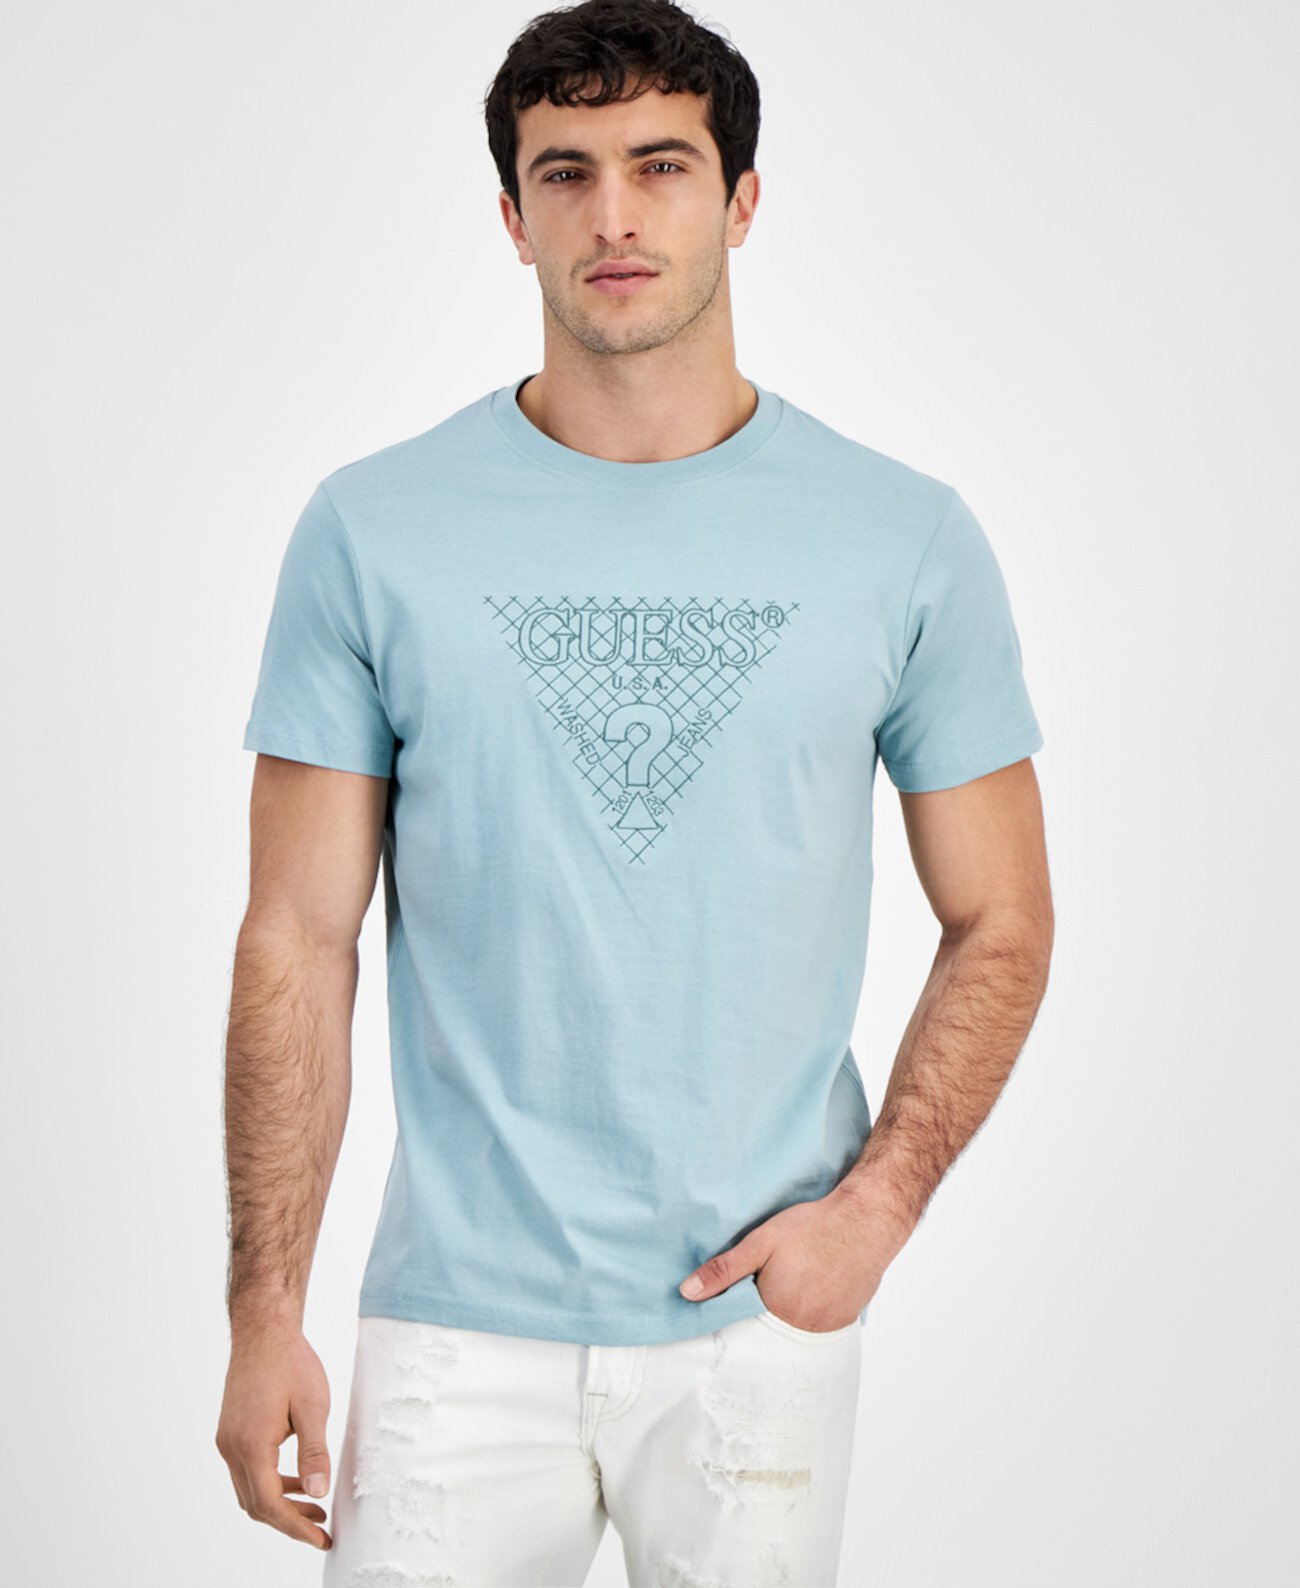 Мужская футболка с коротким рукавом и вышивкой треугольниками GUESS